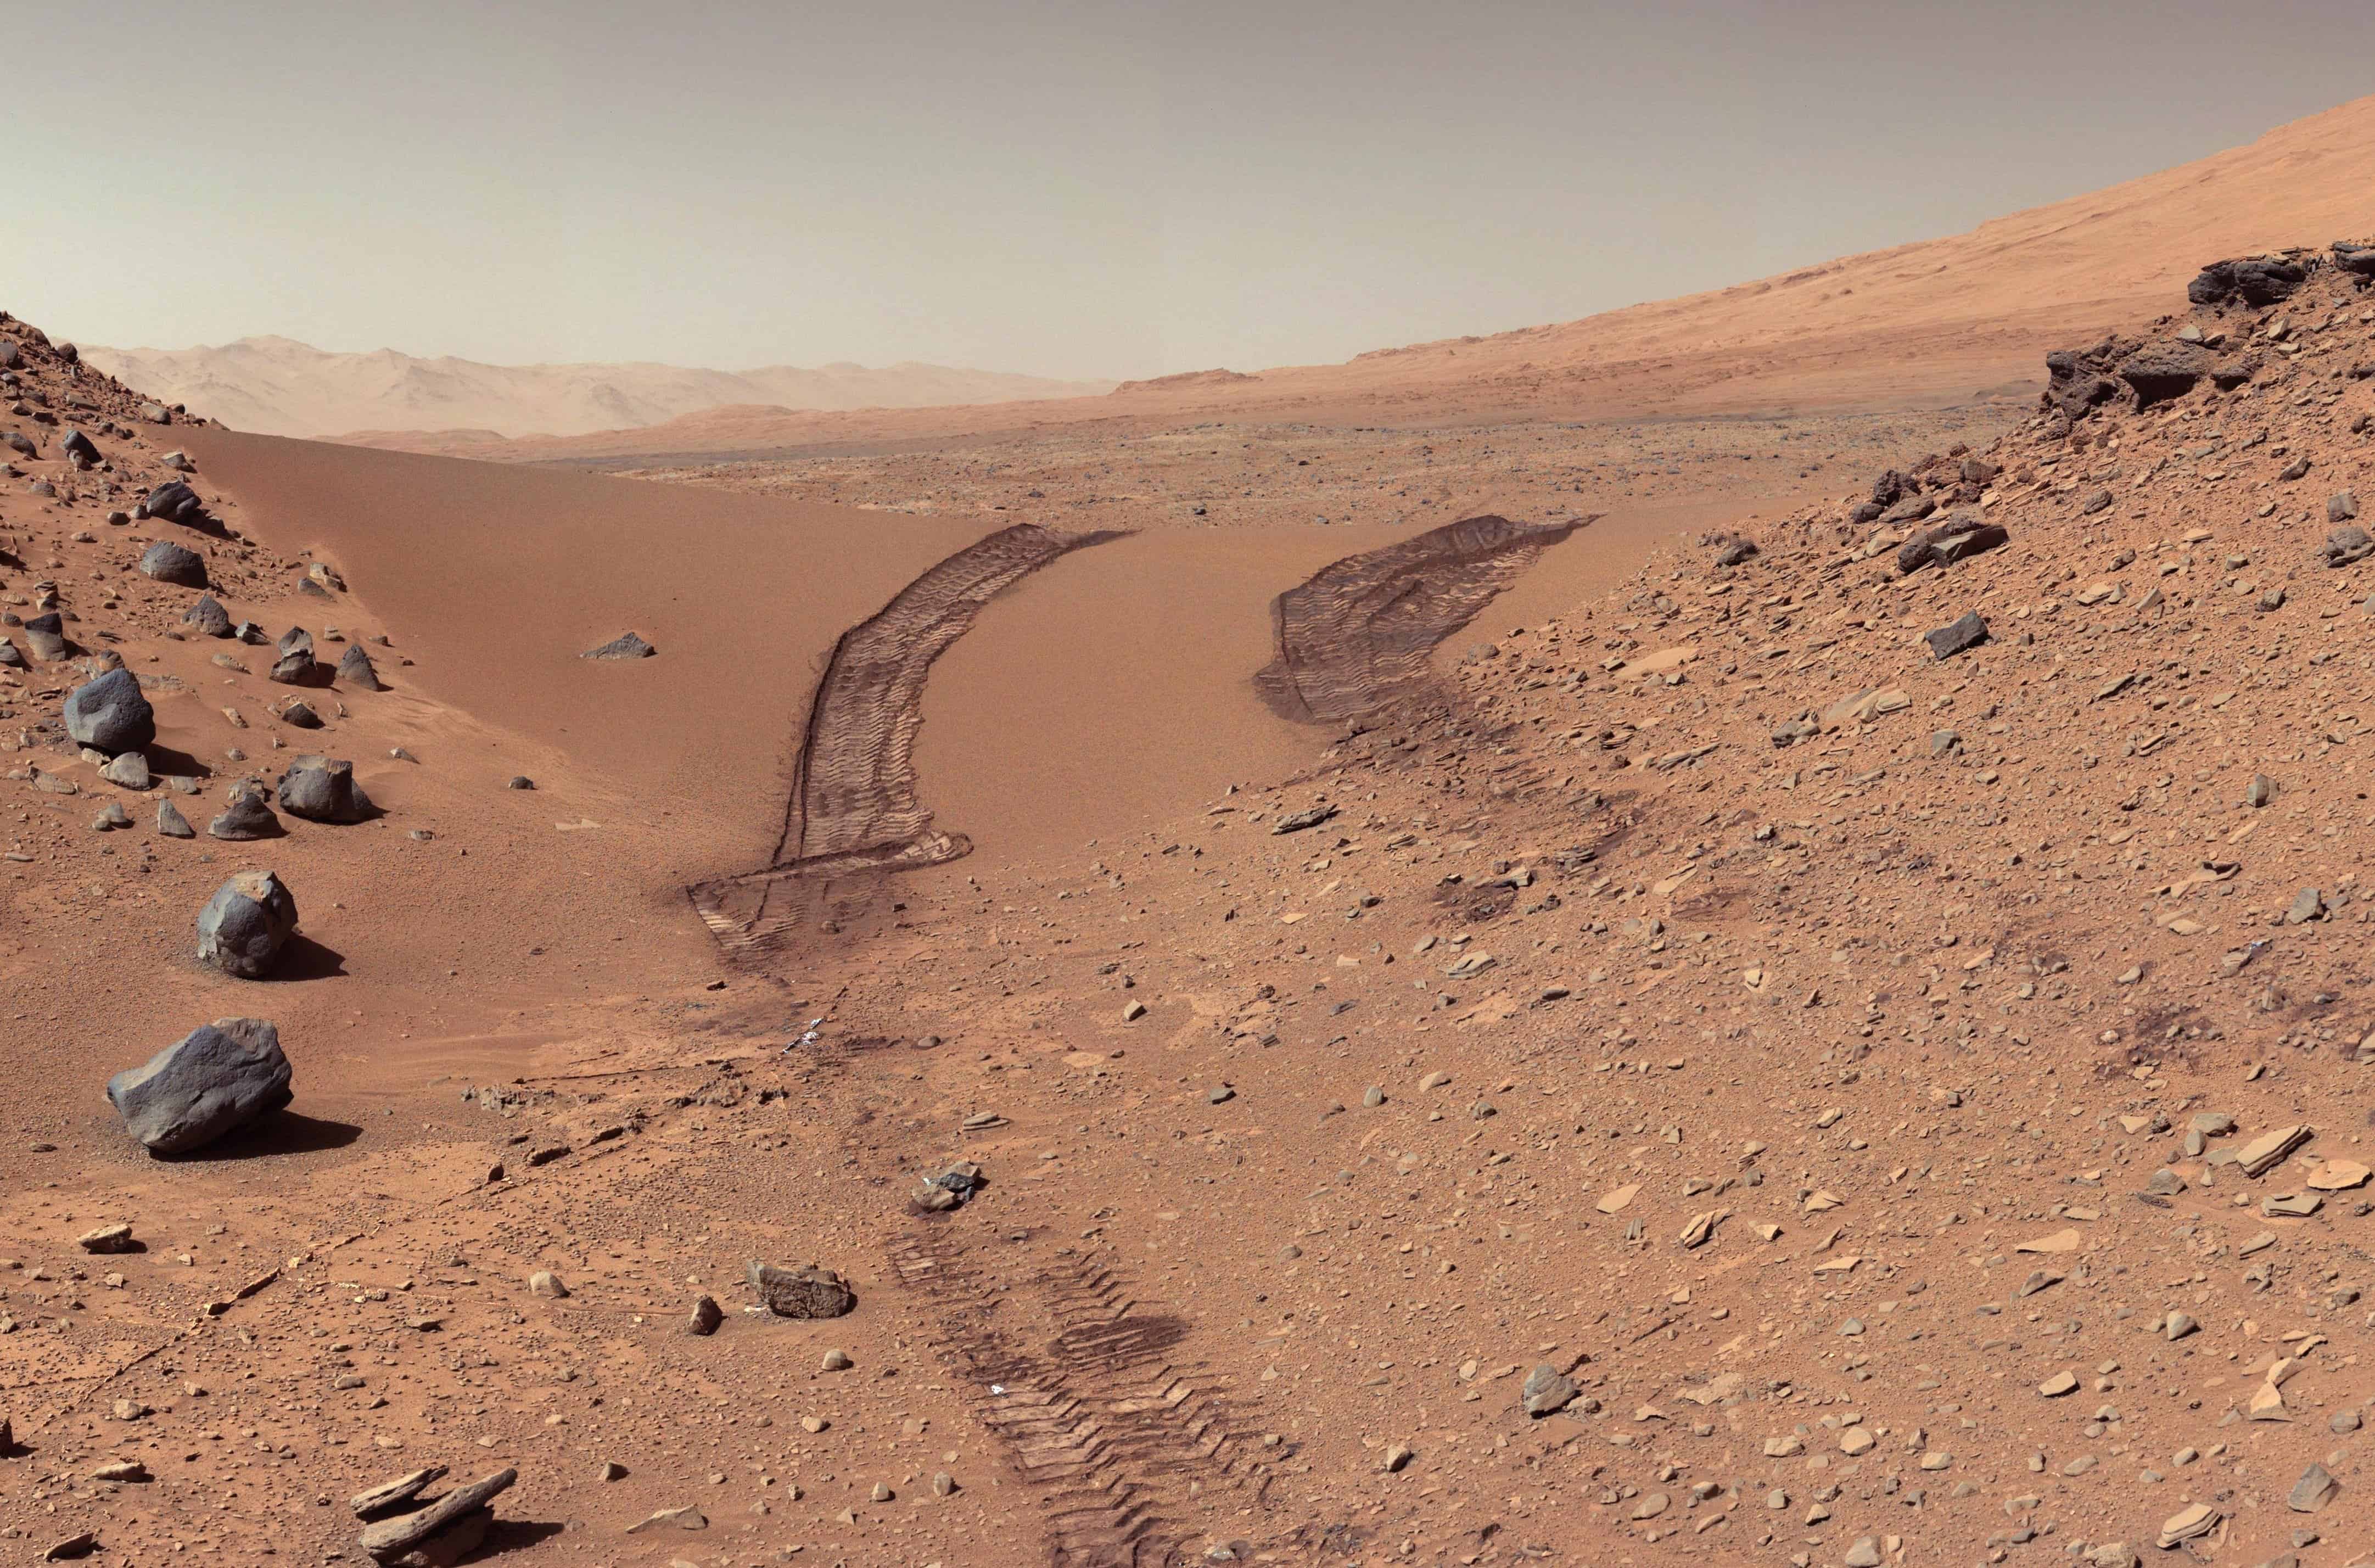 A look back at a dune that NASA's Curiosity Mars rover drive. Image credits: NASA / JPL.